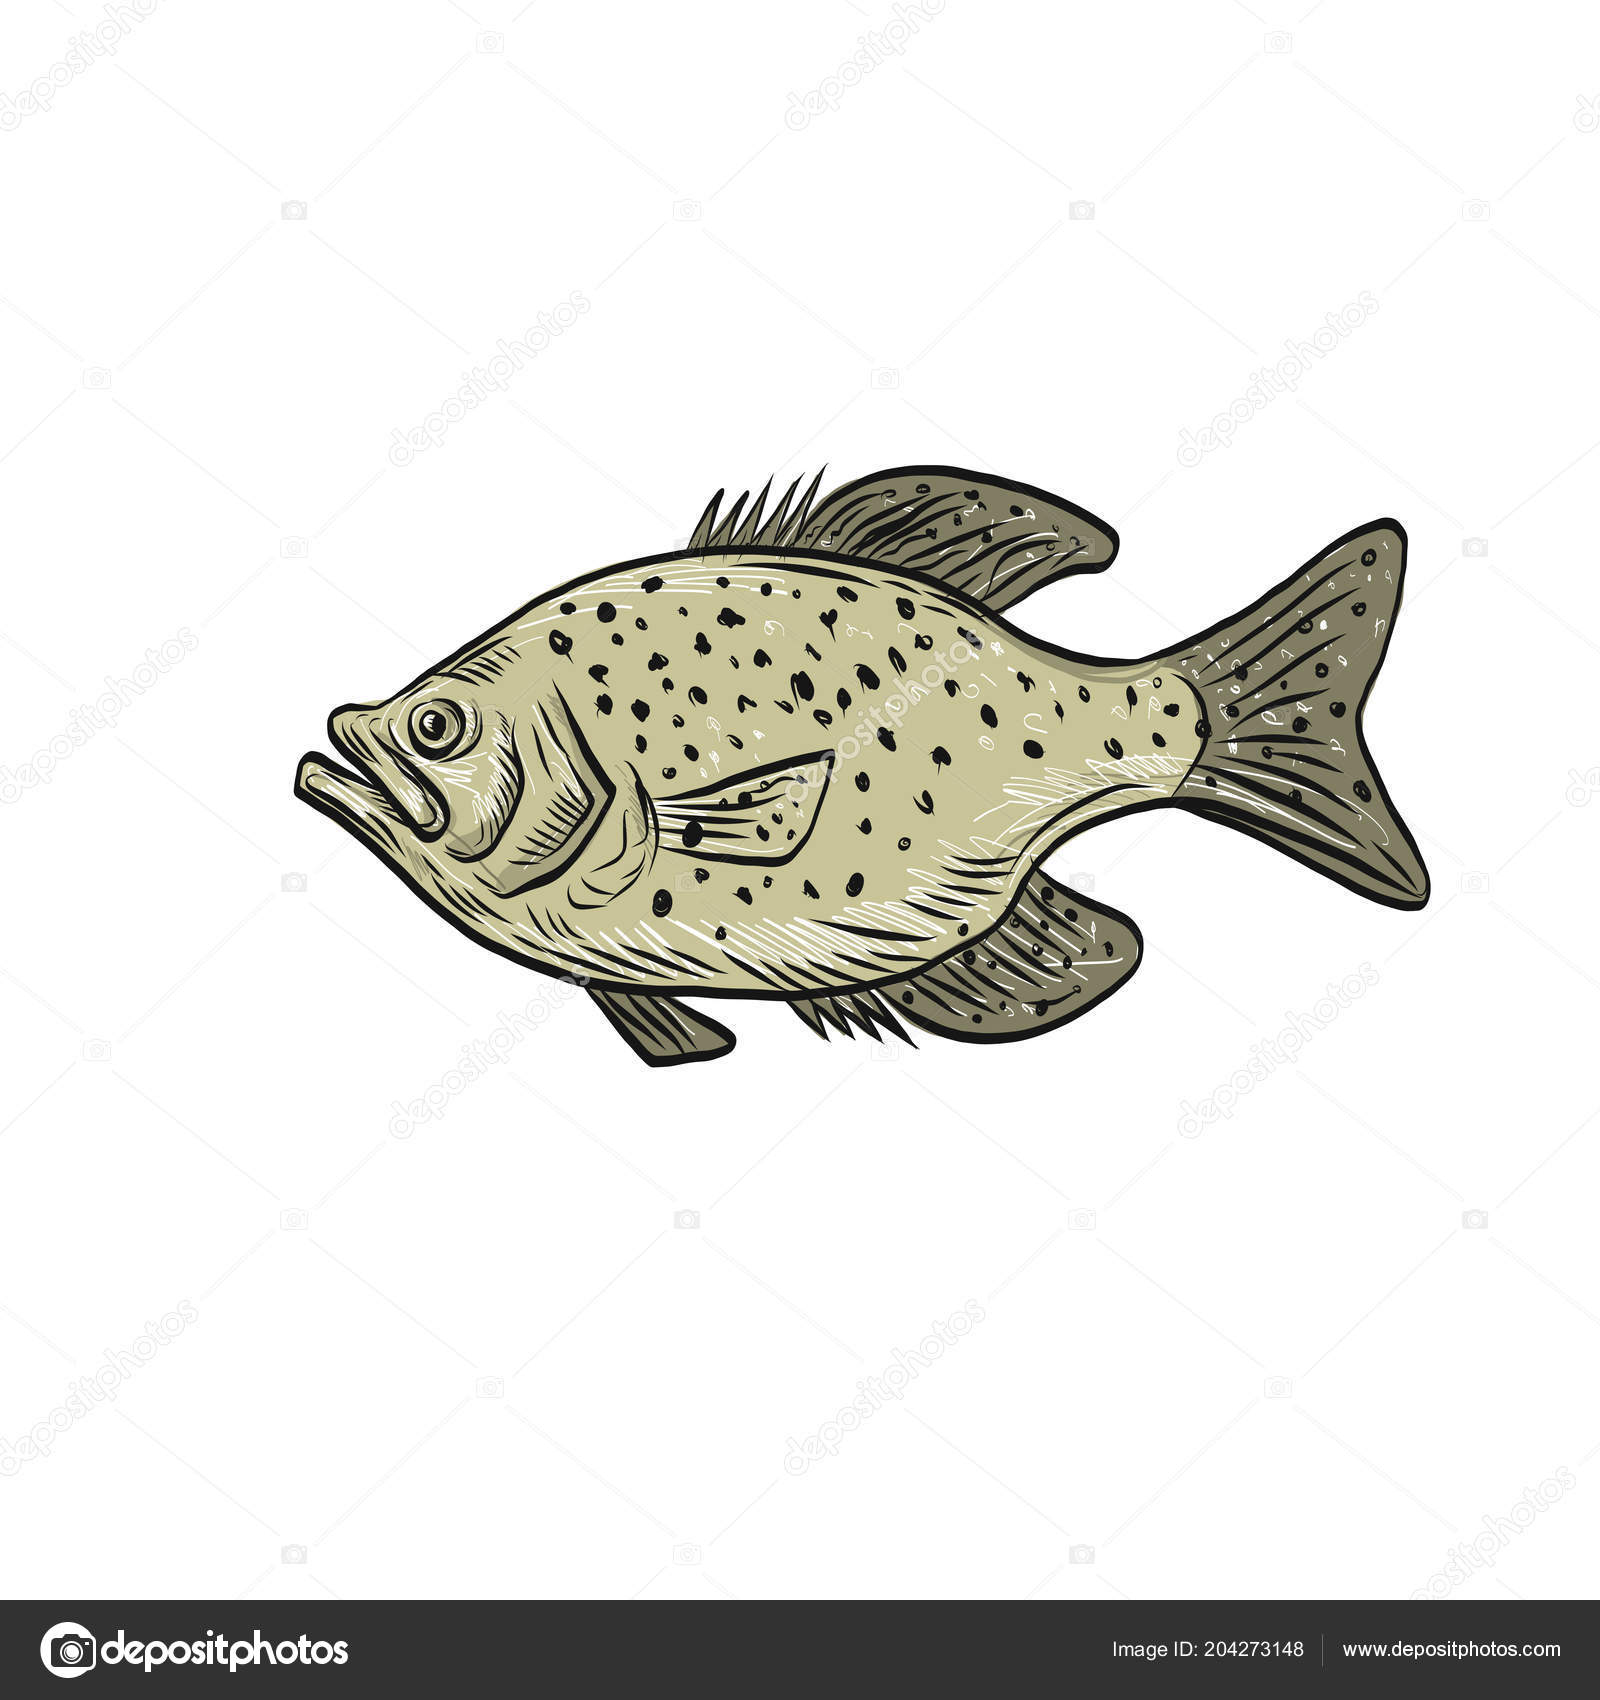 73 ilustraciones de stock de Pez tipo de pez | Depositphotos®